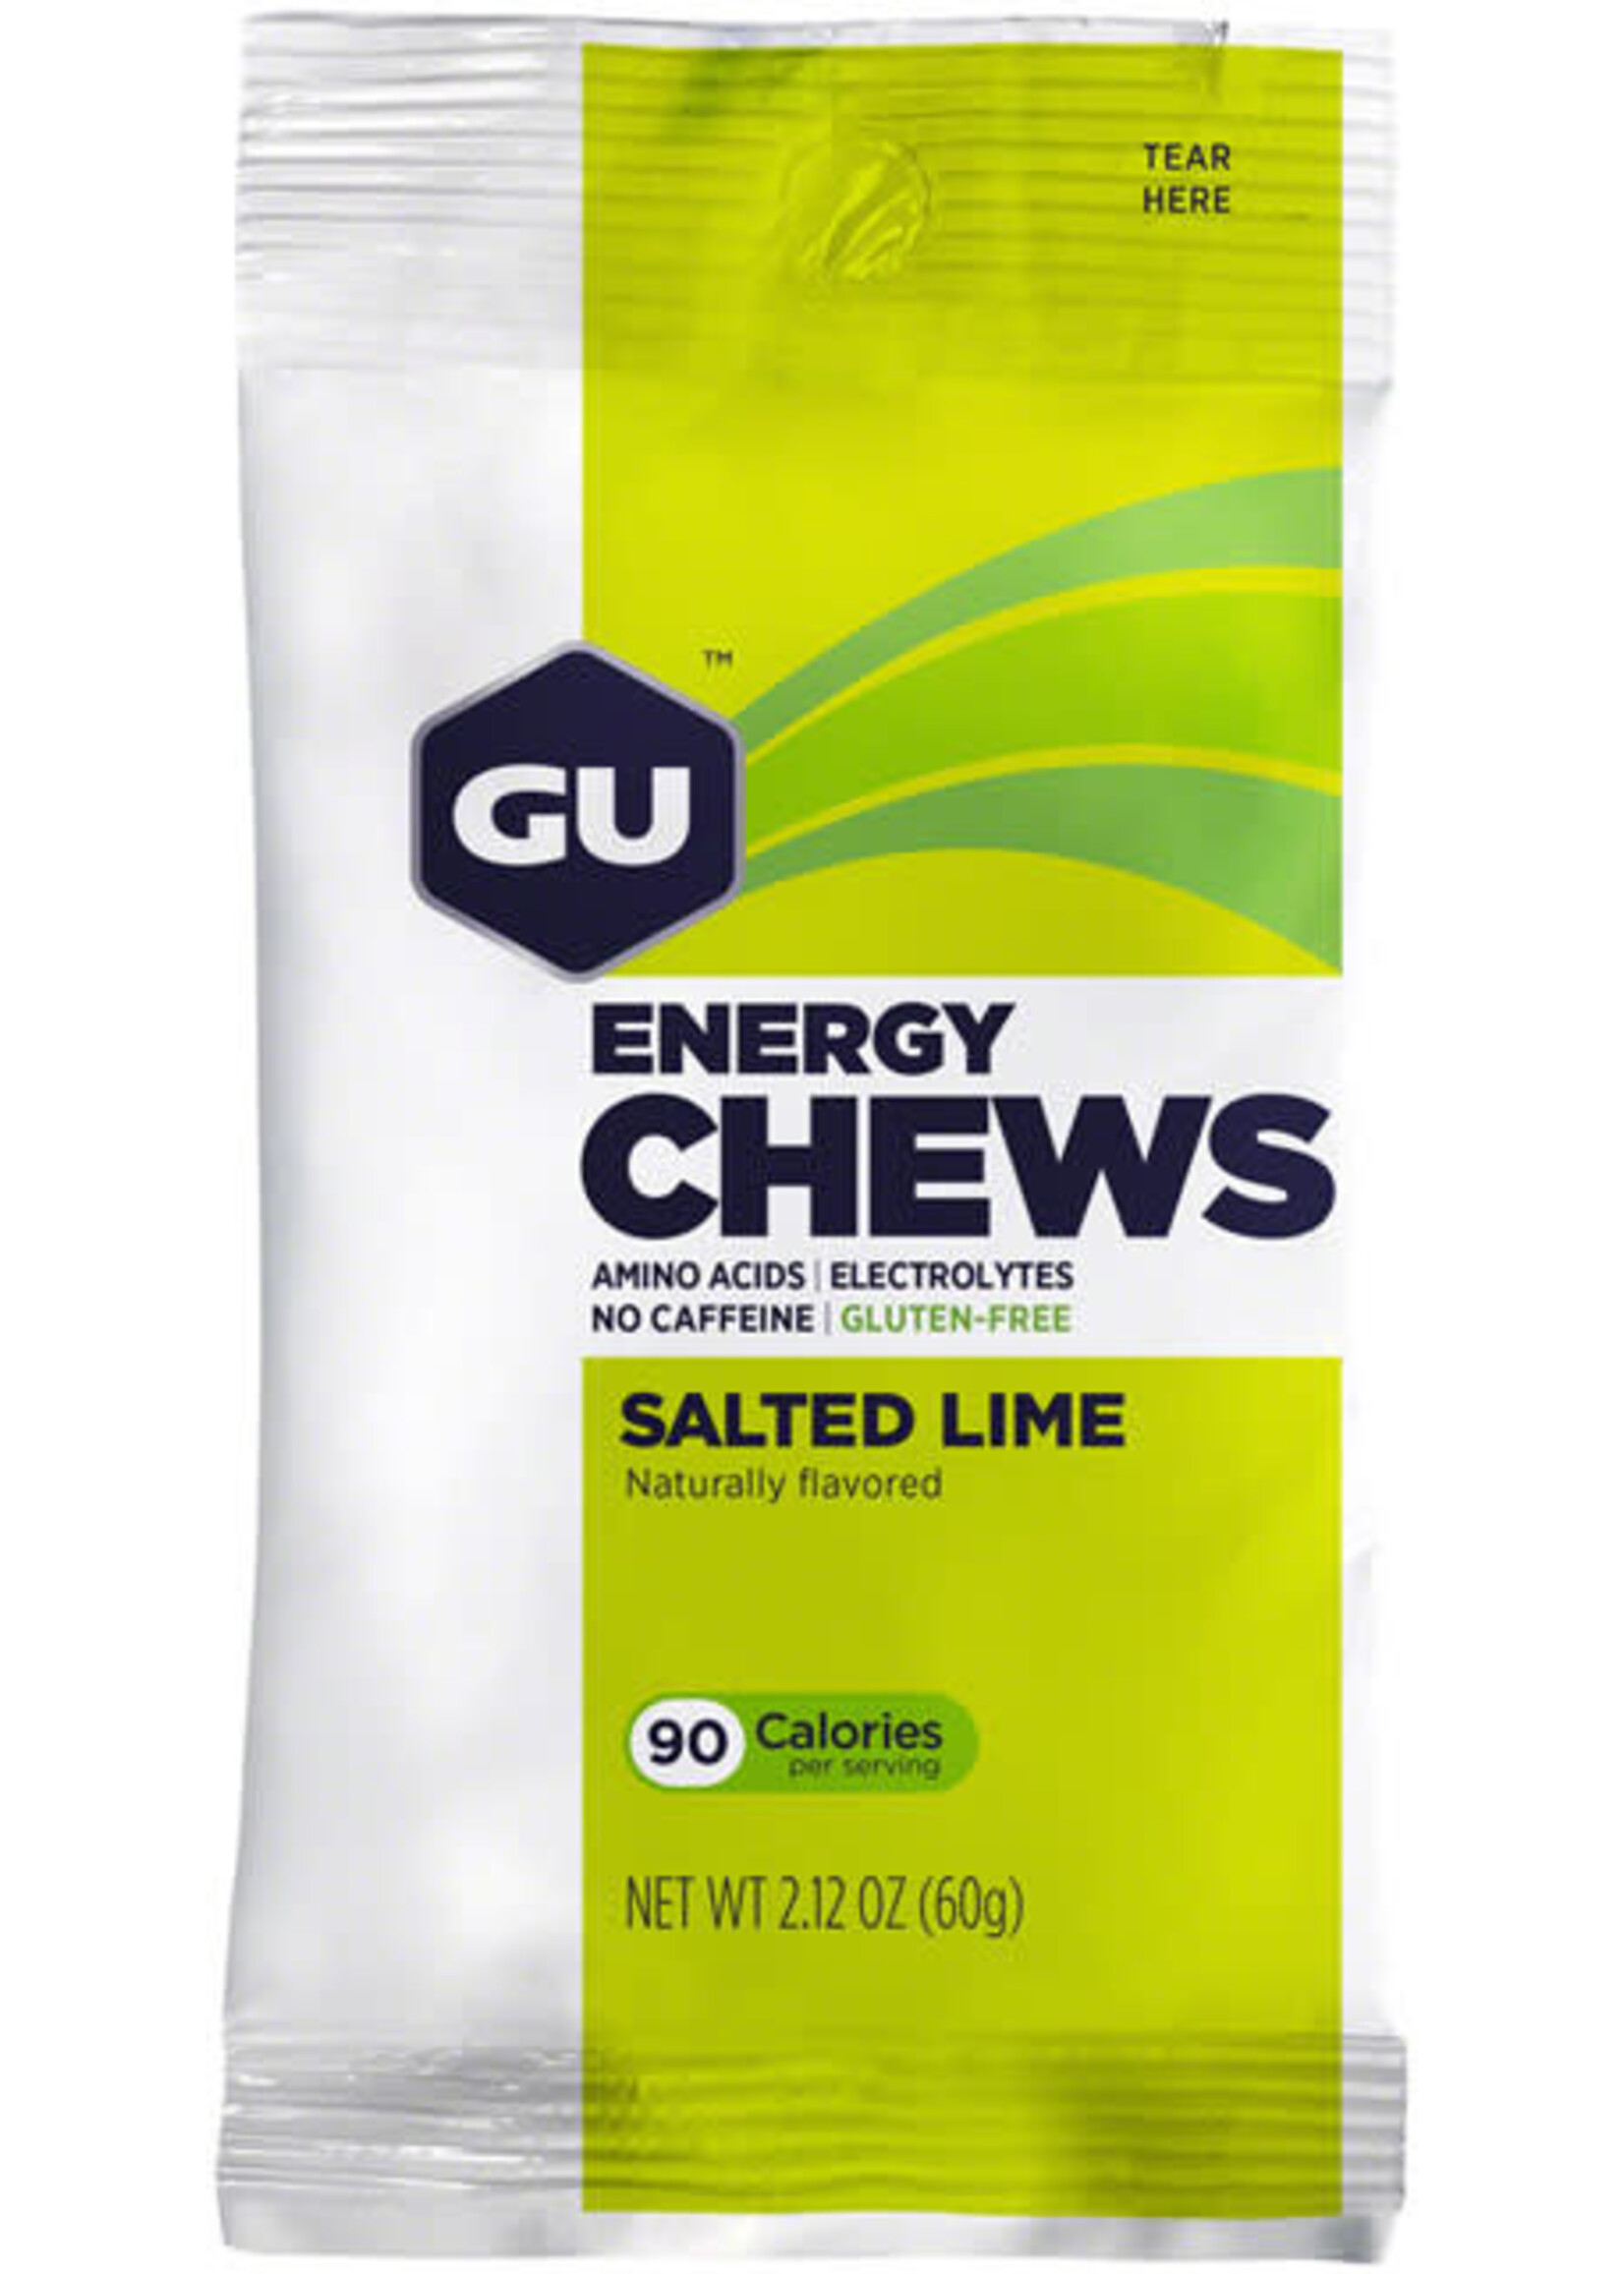 GU GU Chews: Multiple Flavors and Sizes